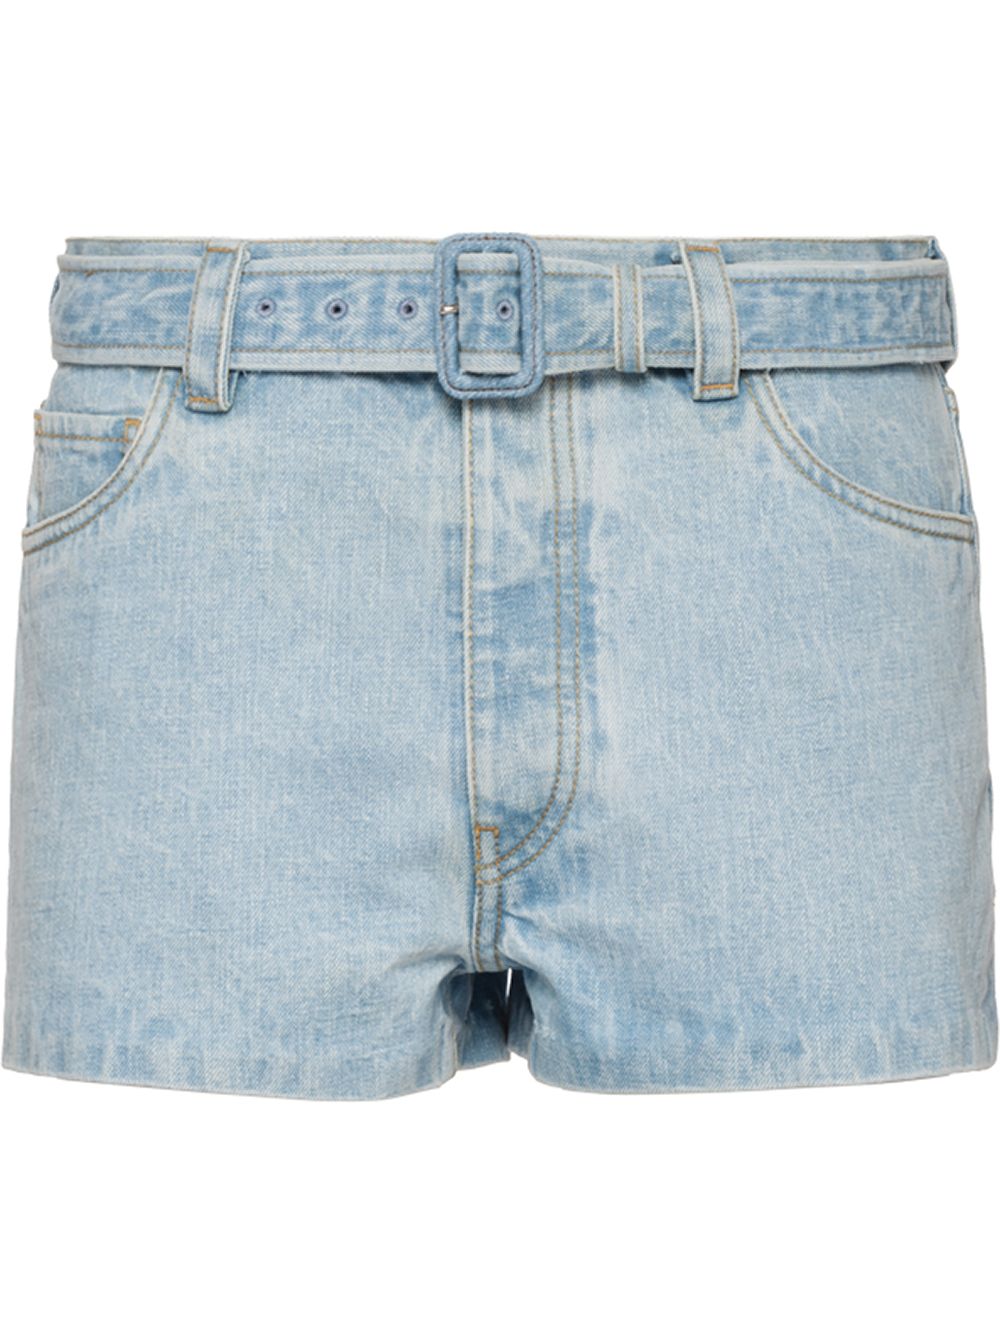 фото Prada джинсовые шорты с поясом